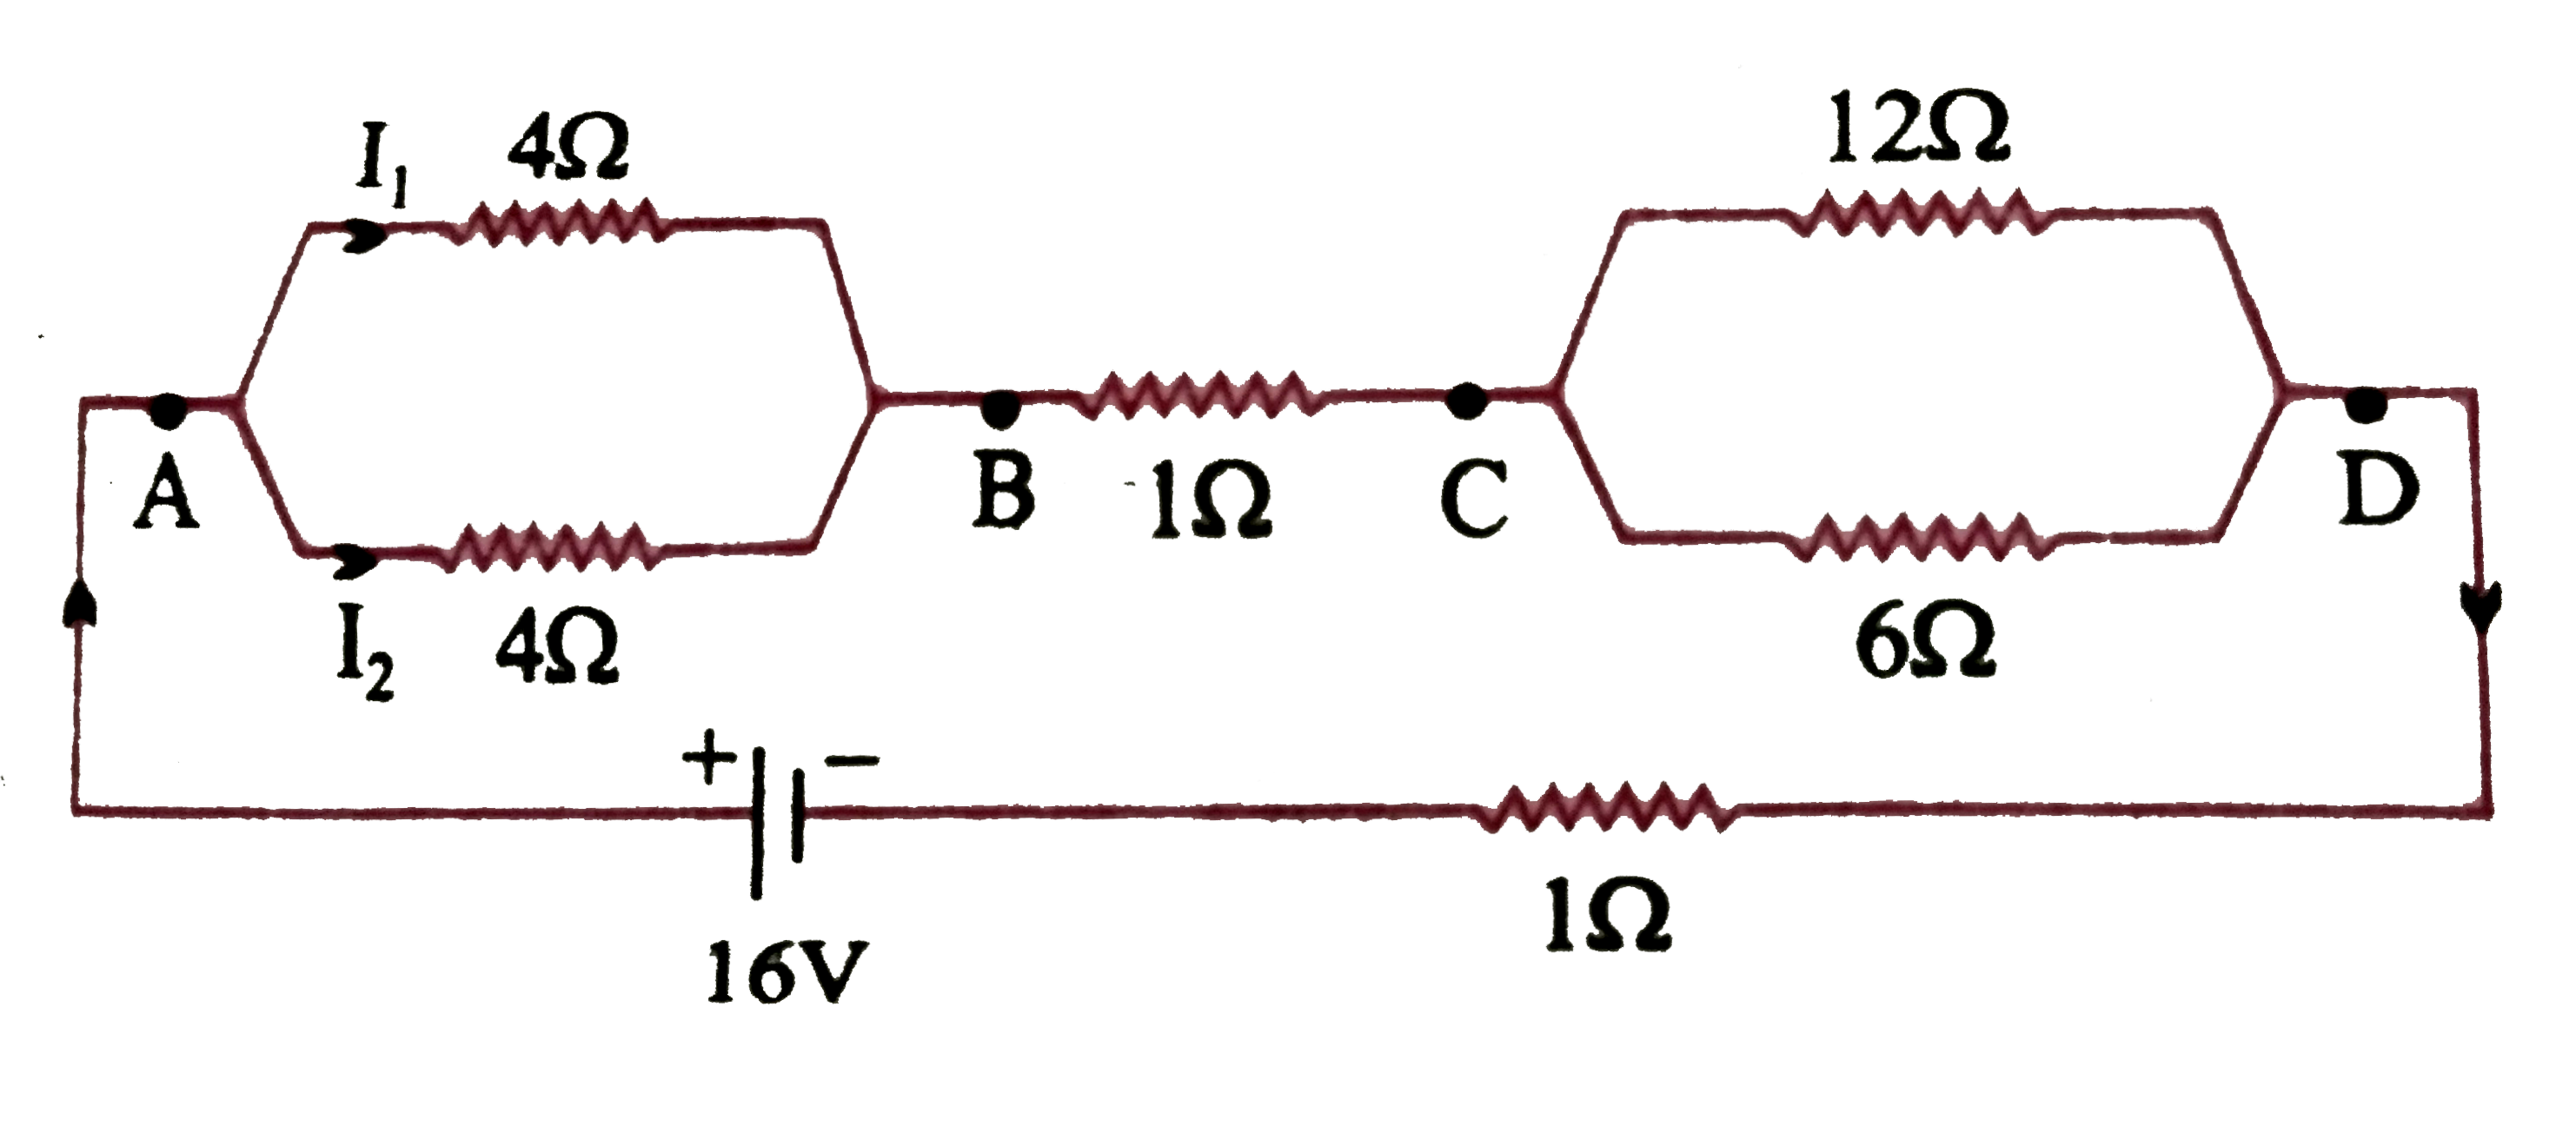 निम्न  चित्र के अनुसार 1 Omega  आंतरिक प्रतिरोध  के 16 V कि एक बैटरी से प्रतिरोधों  के एक नेटवर्क  को जोड़ा  गया है ।   नेटवर्क के तुल्य  प्रतिरोध कि गणना  कीजिए ।